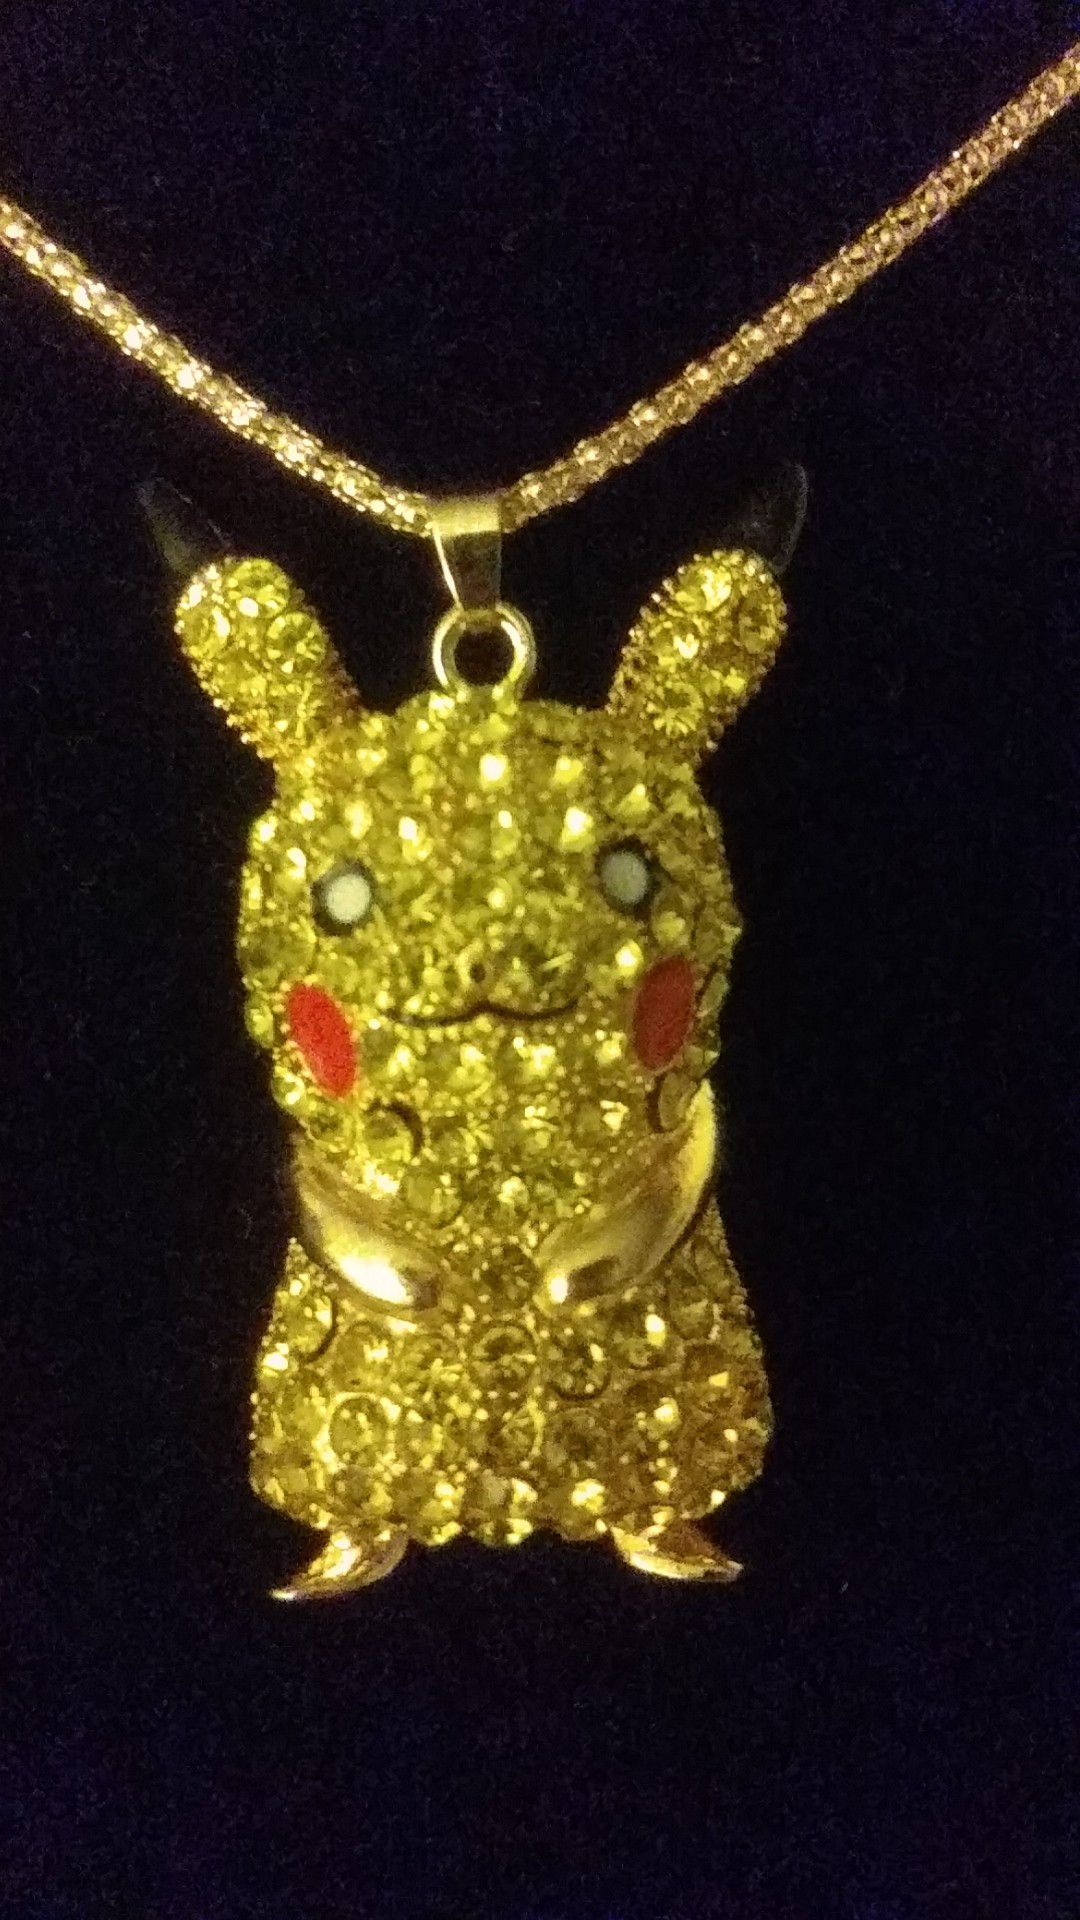 Necklace, pikachu, 20$